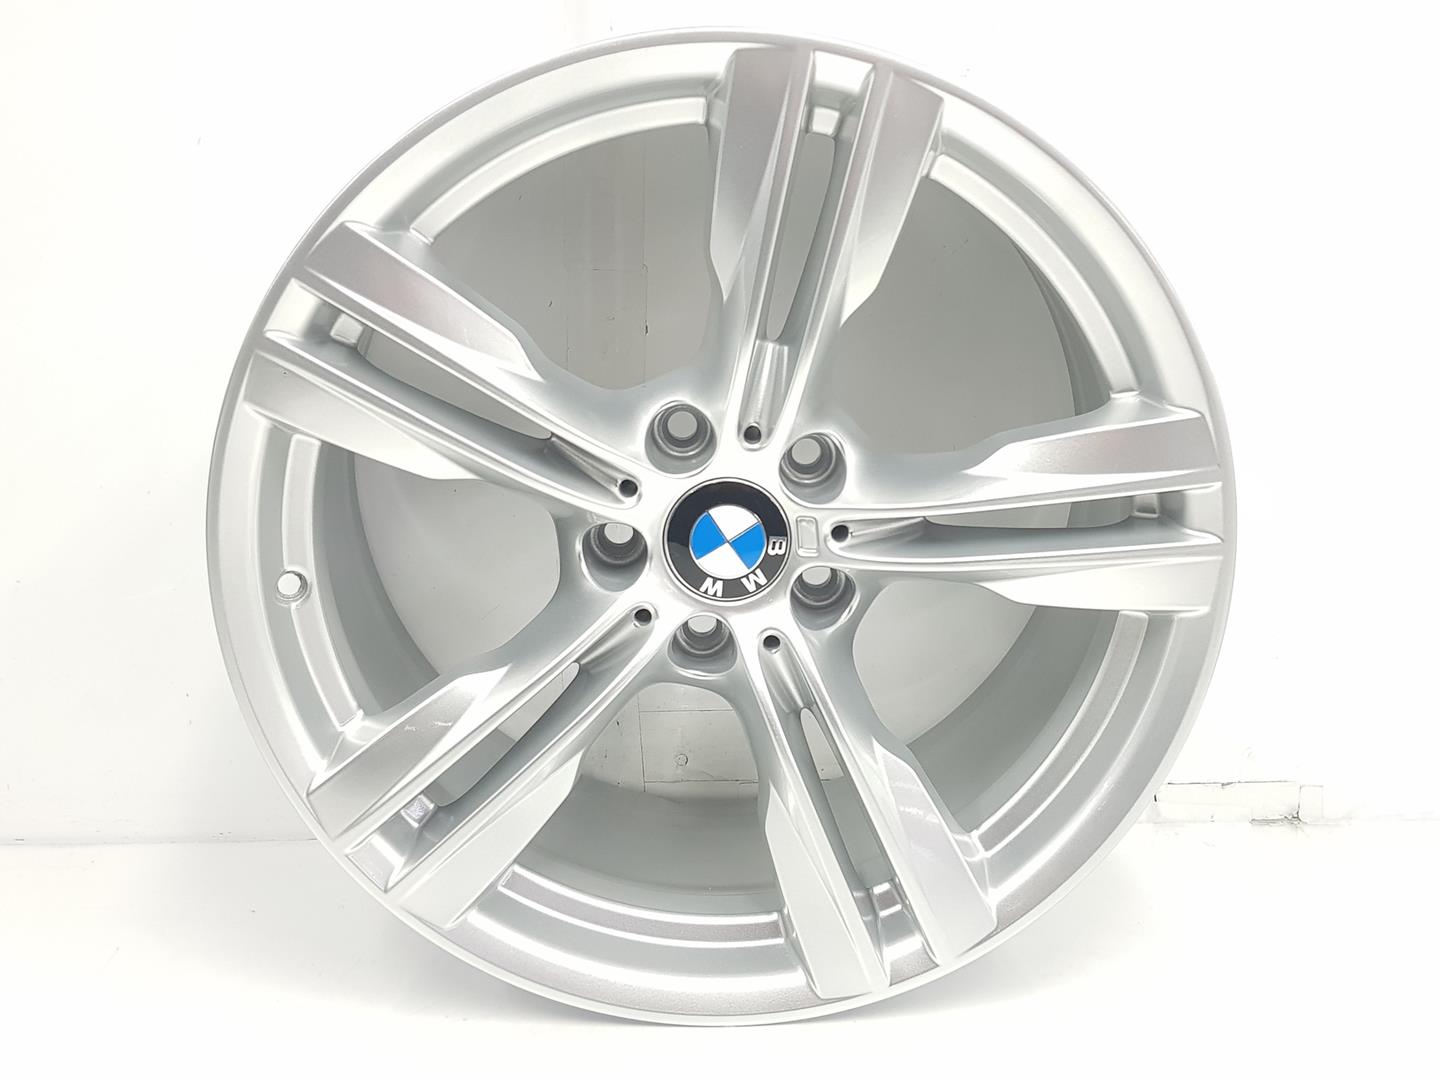 BMW X5 F15 (2013-2018) Wheel 36117846786, 9JX19, 19PULGADAS 24238681